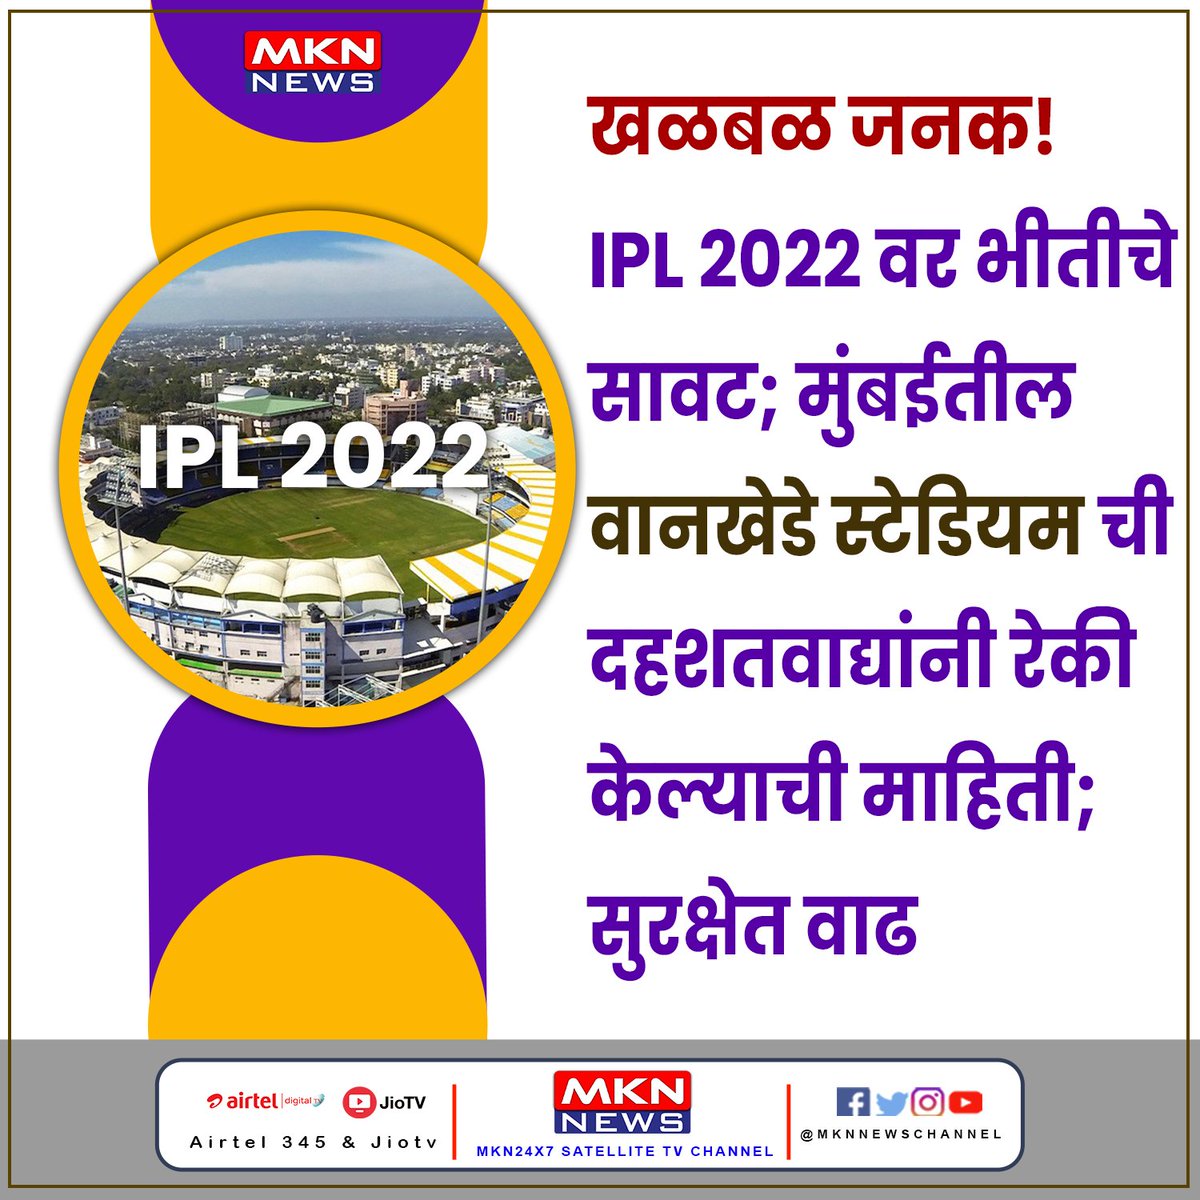 खळबळजनक! IPL 2022 वर भीतीचे सावट; मुंबईतील वानखेडे स्टेडियमची दहशतवाद्यांनी रेकी केल्याची माहिती; सुरक्षेत वाढ

#IPL2022 #WhistlePodu #ChennaiIPL #iplmegaauction2022 #SPICEINDIA2022